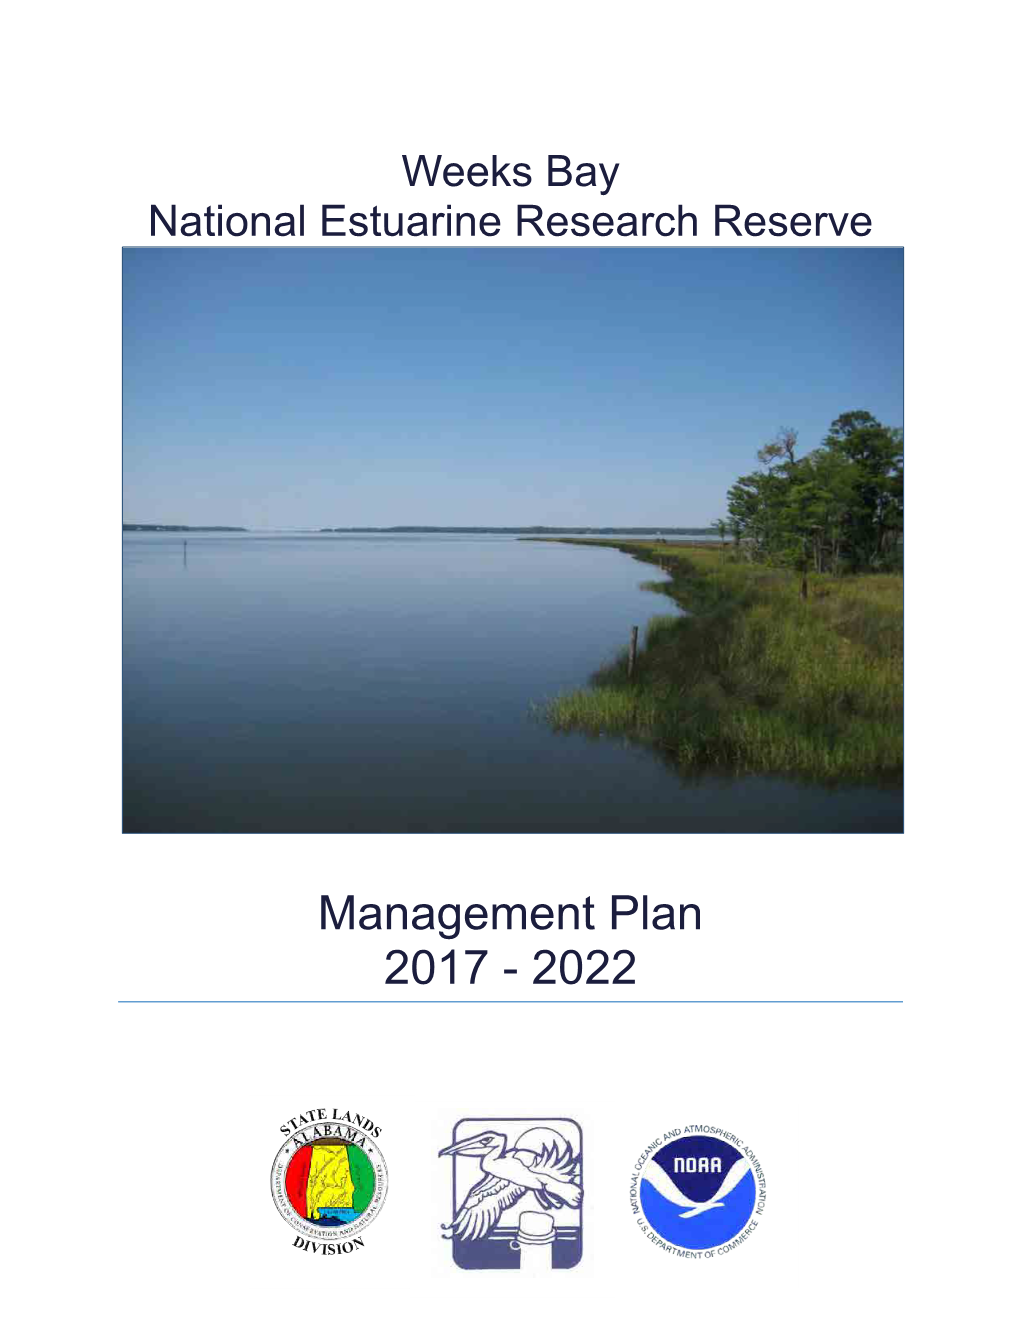 Weeks Bay Reserve Management Plan 2017-2022